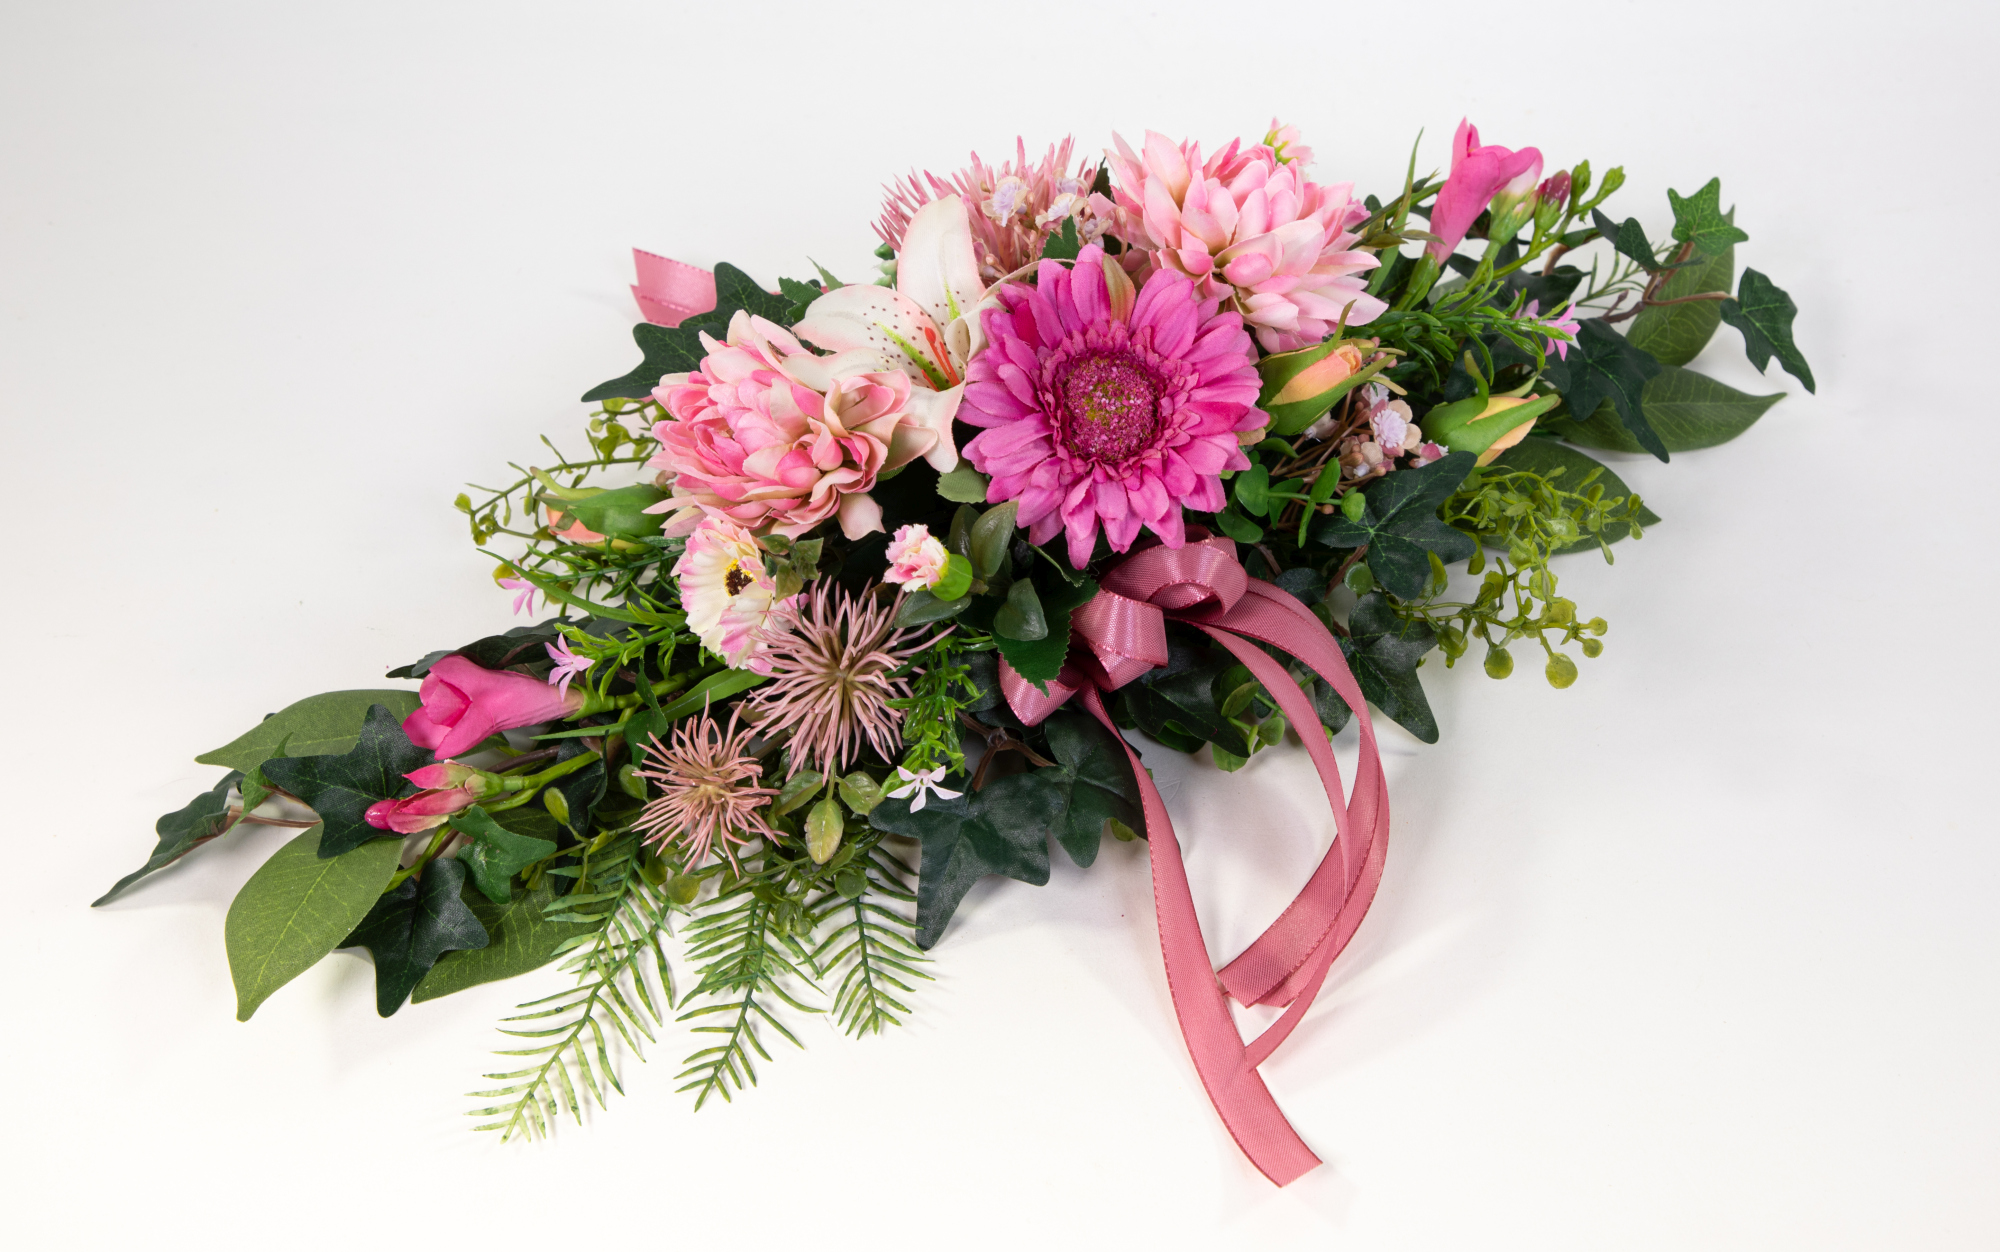 Tischgesteck länglich 50cm rosa-pink mit Gerbera und Lilie Kunstblumen künstliche Blumen